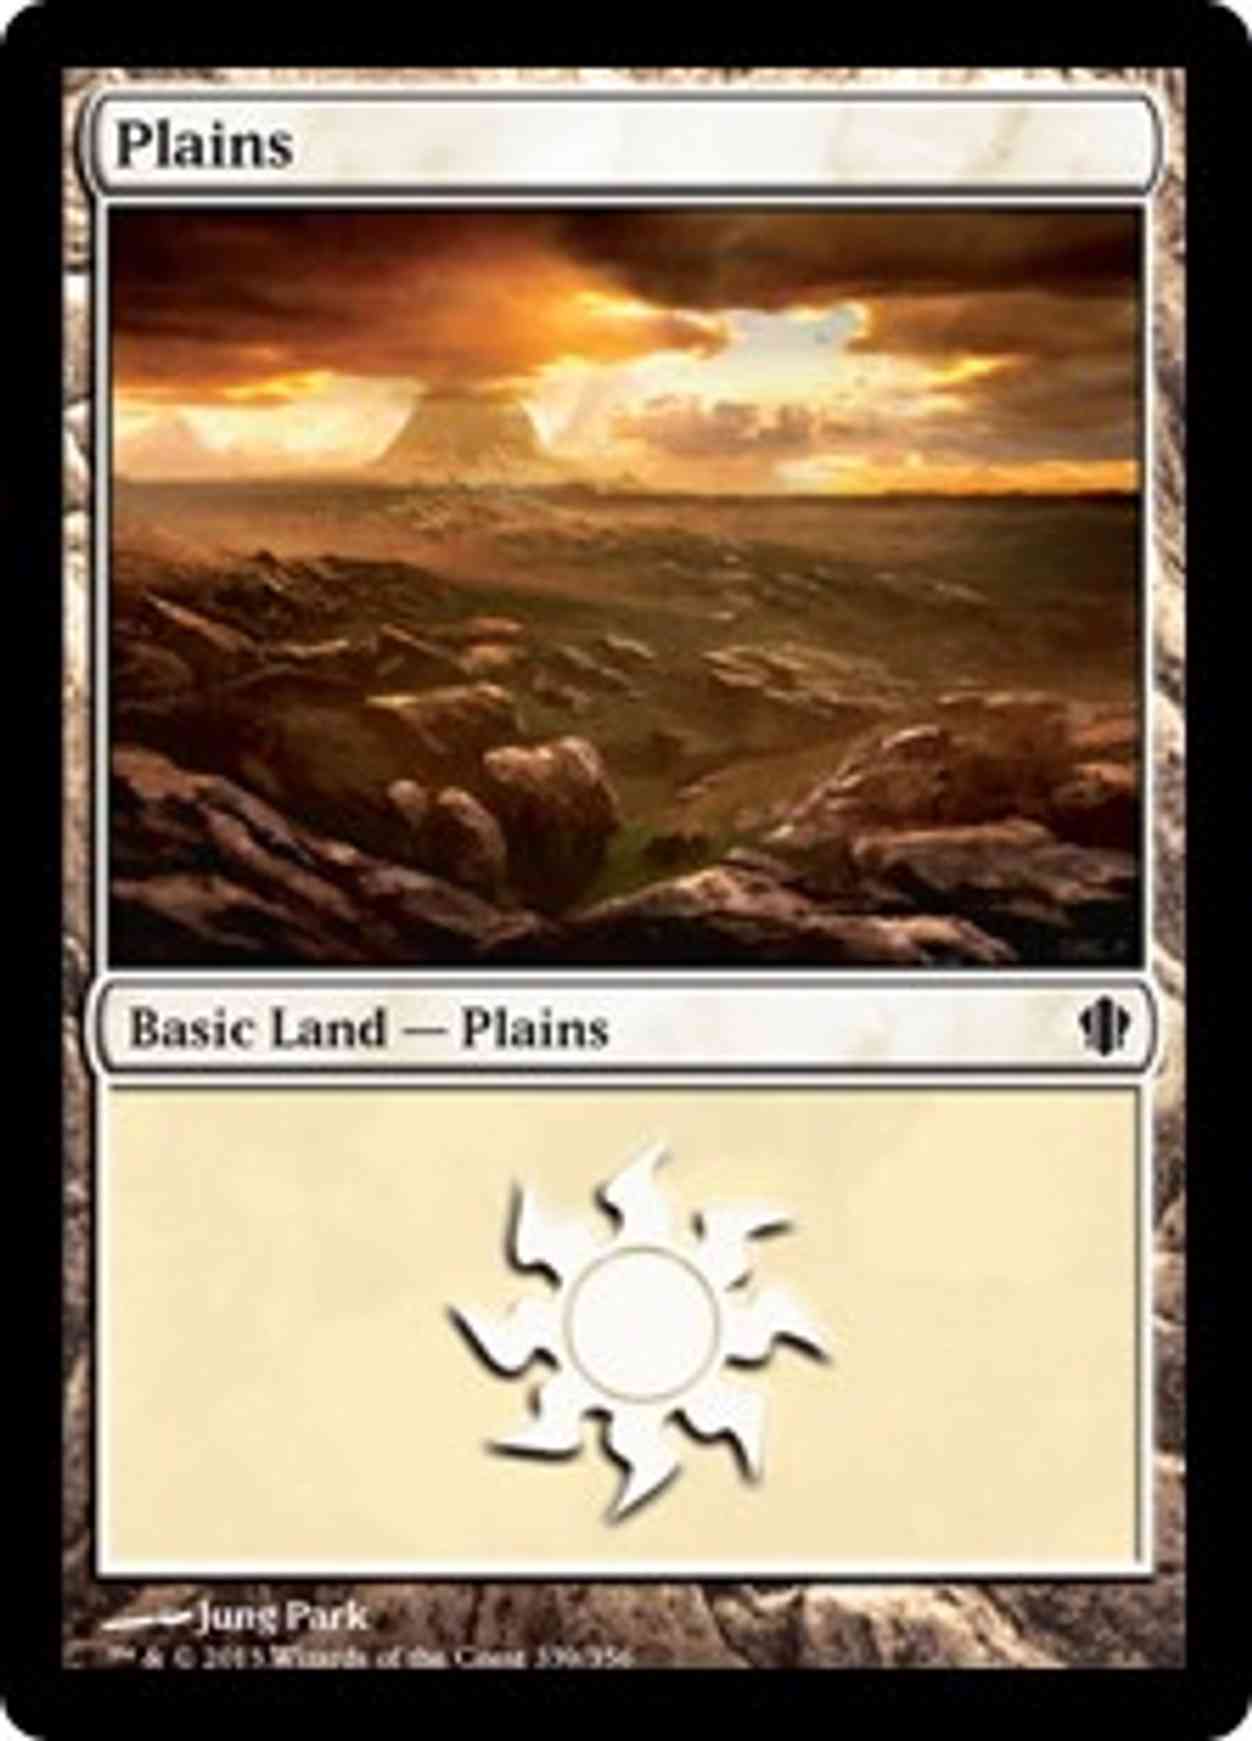 Plains (339) magic card front